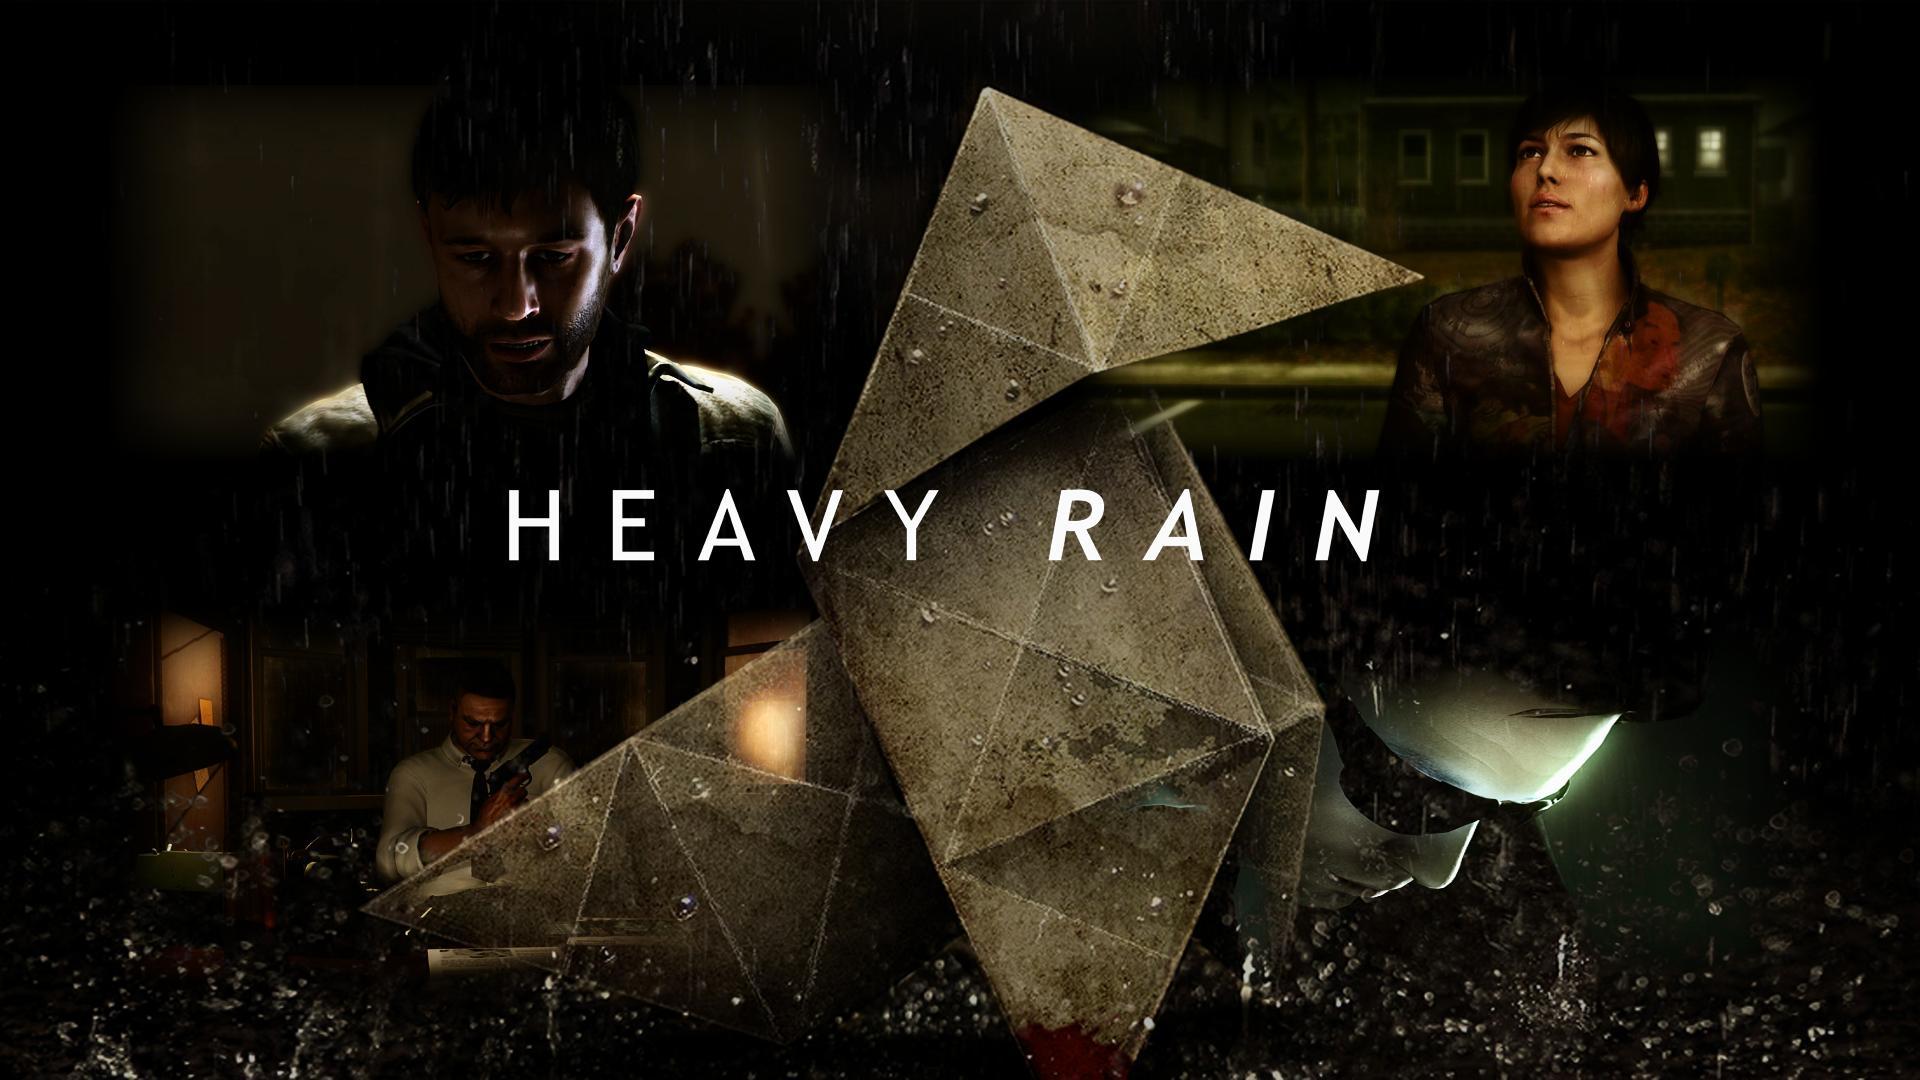 HD Heavy Rain 2013 / Wallpaper Database